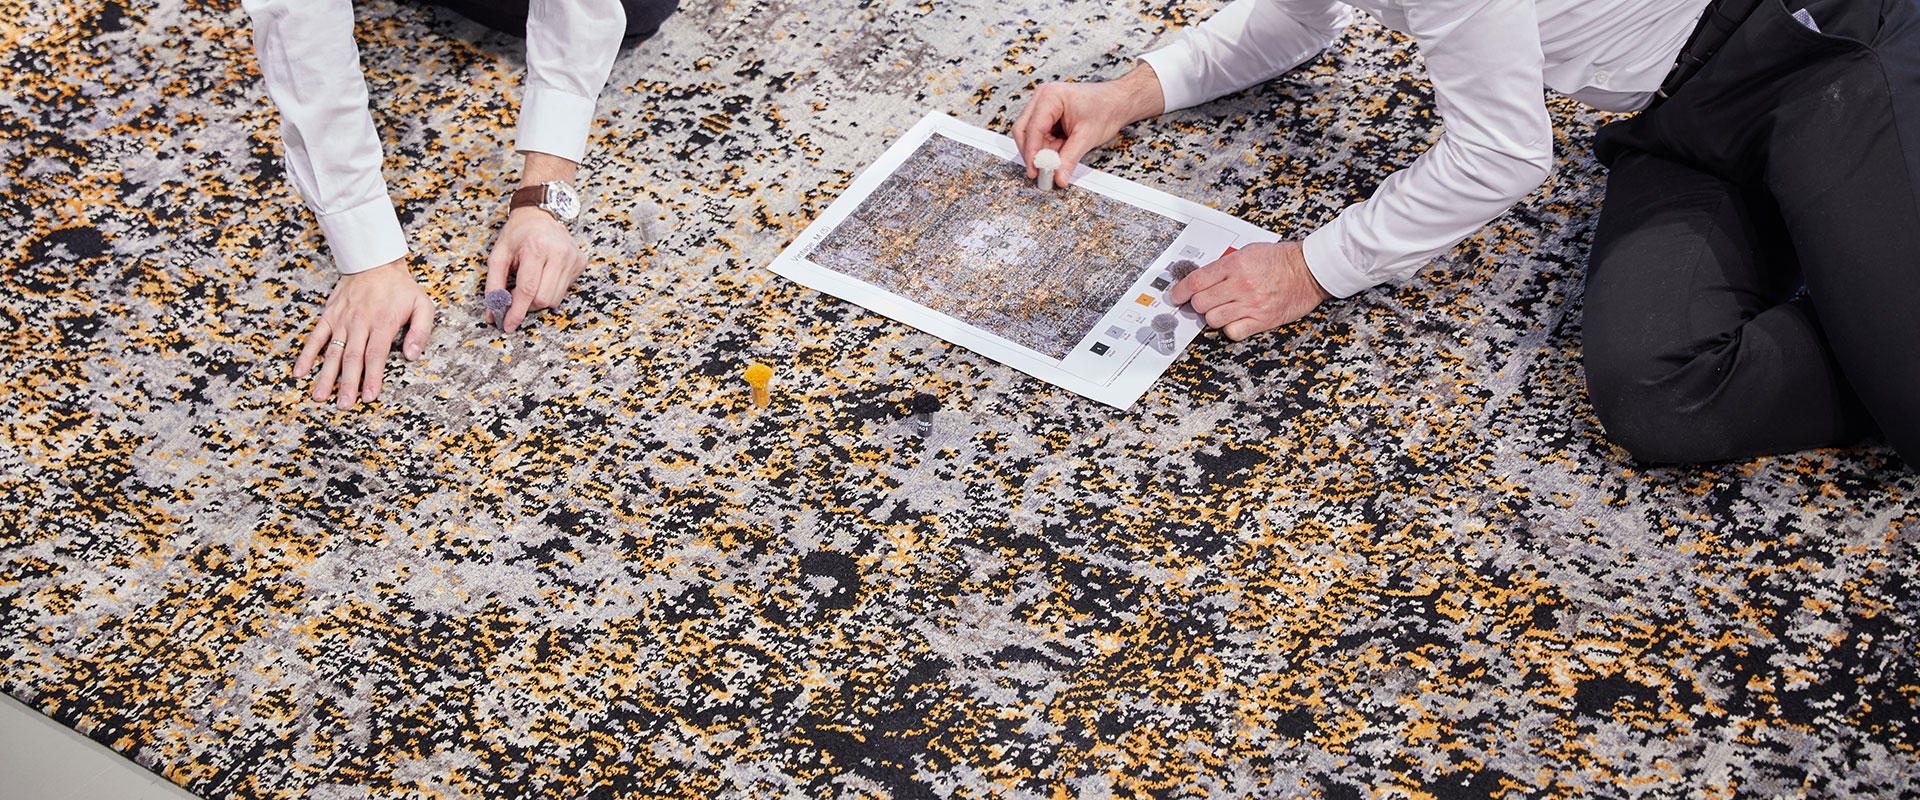 Zwei Personen knien auf einem gemusterten Teppich und untersuchen ein Puzzle; eines der Puzzleteile liegt neben ihnen. Sie halten ein Referenzbild des Puzzle-Designs. Der Fokus liegt auf den Händen und Puzzleteilen, Gesichter sind nicht sichtbar.